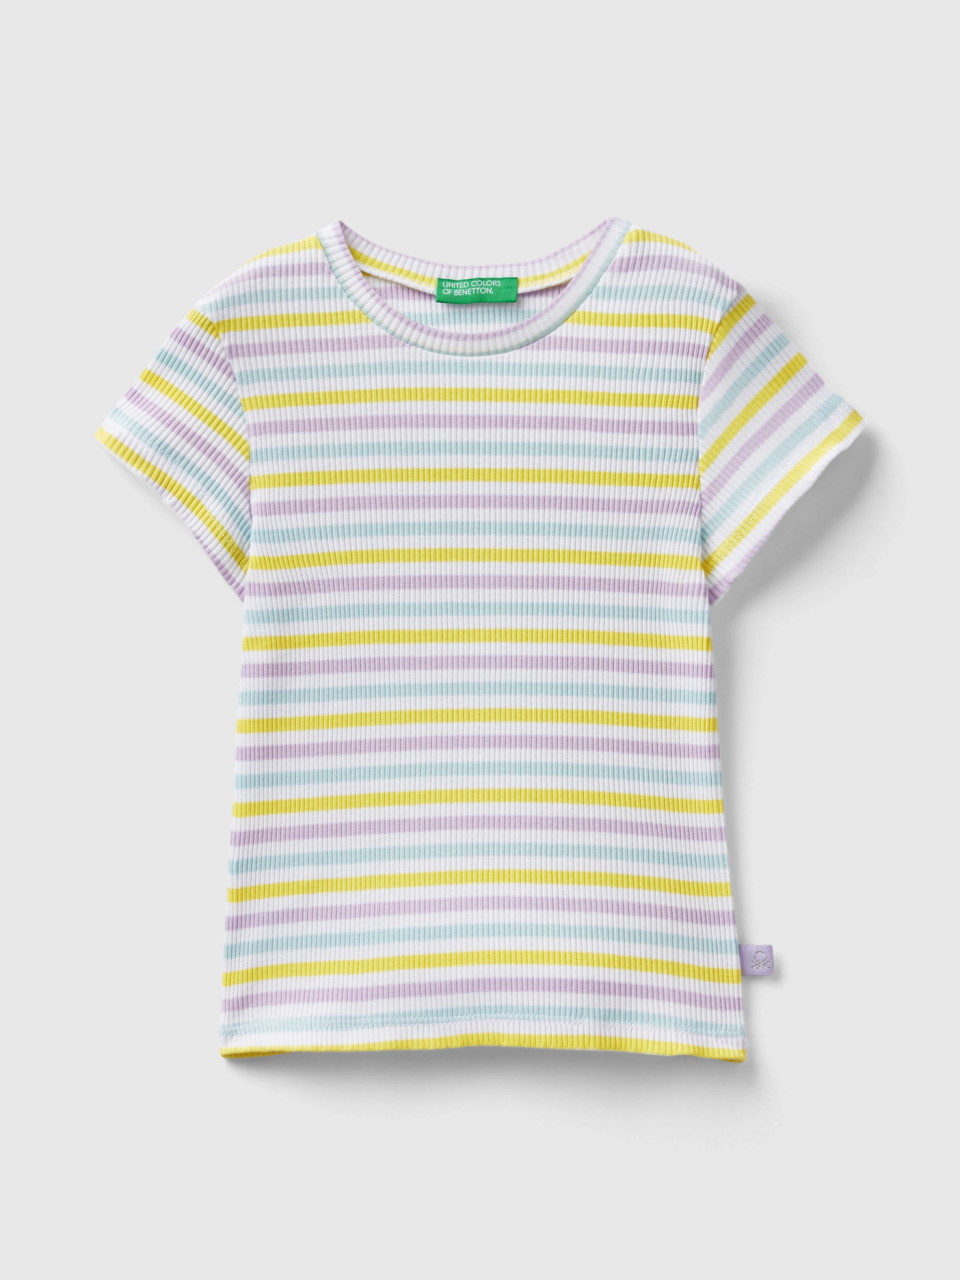 Benetton, Camiseta Slim Fit De Rayas, Multicolor, Niños